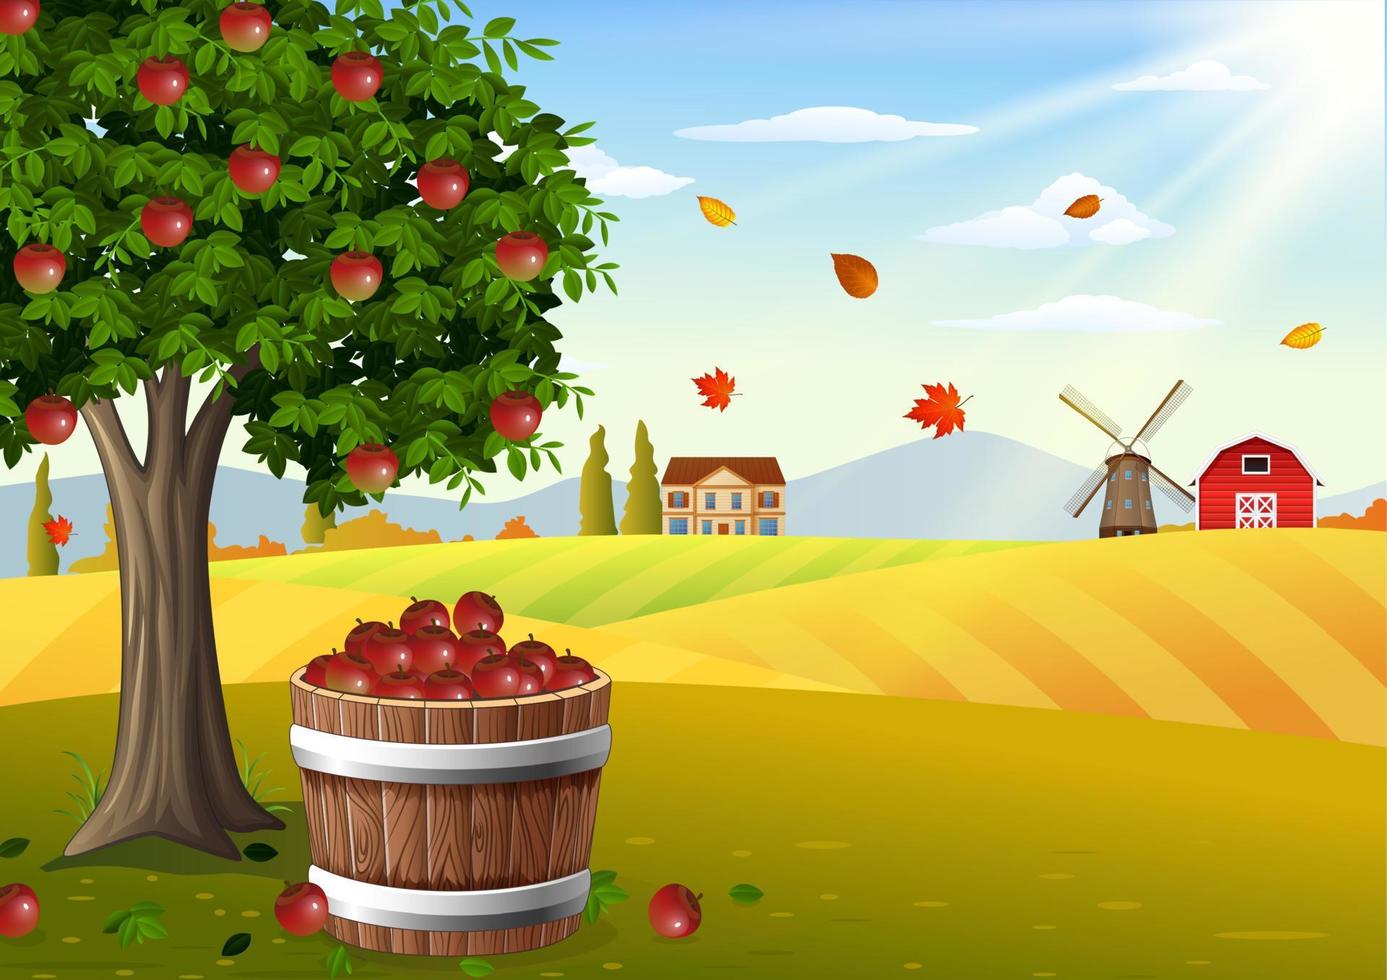 albero di mele e cesto di mele nel paesaggio della fattoria in autunno vettore